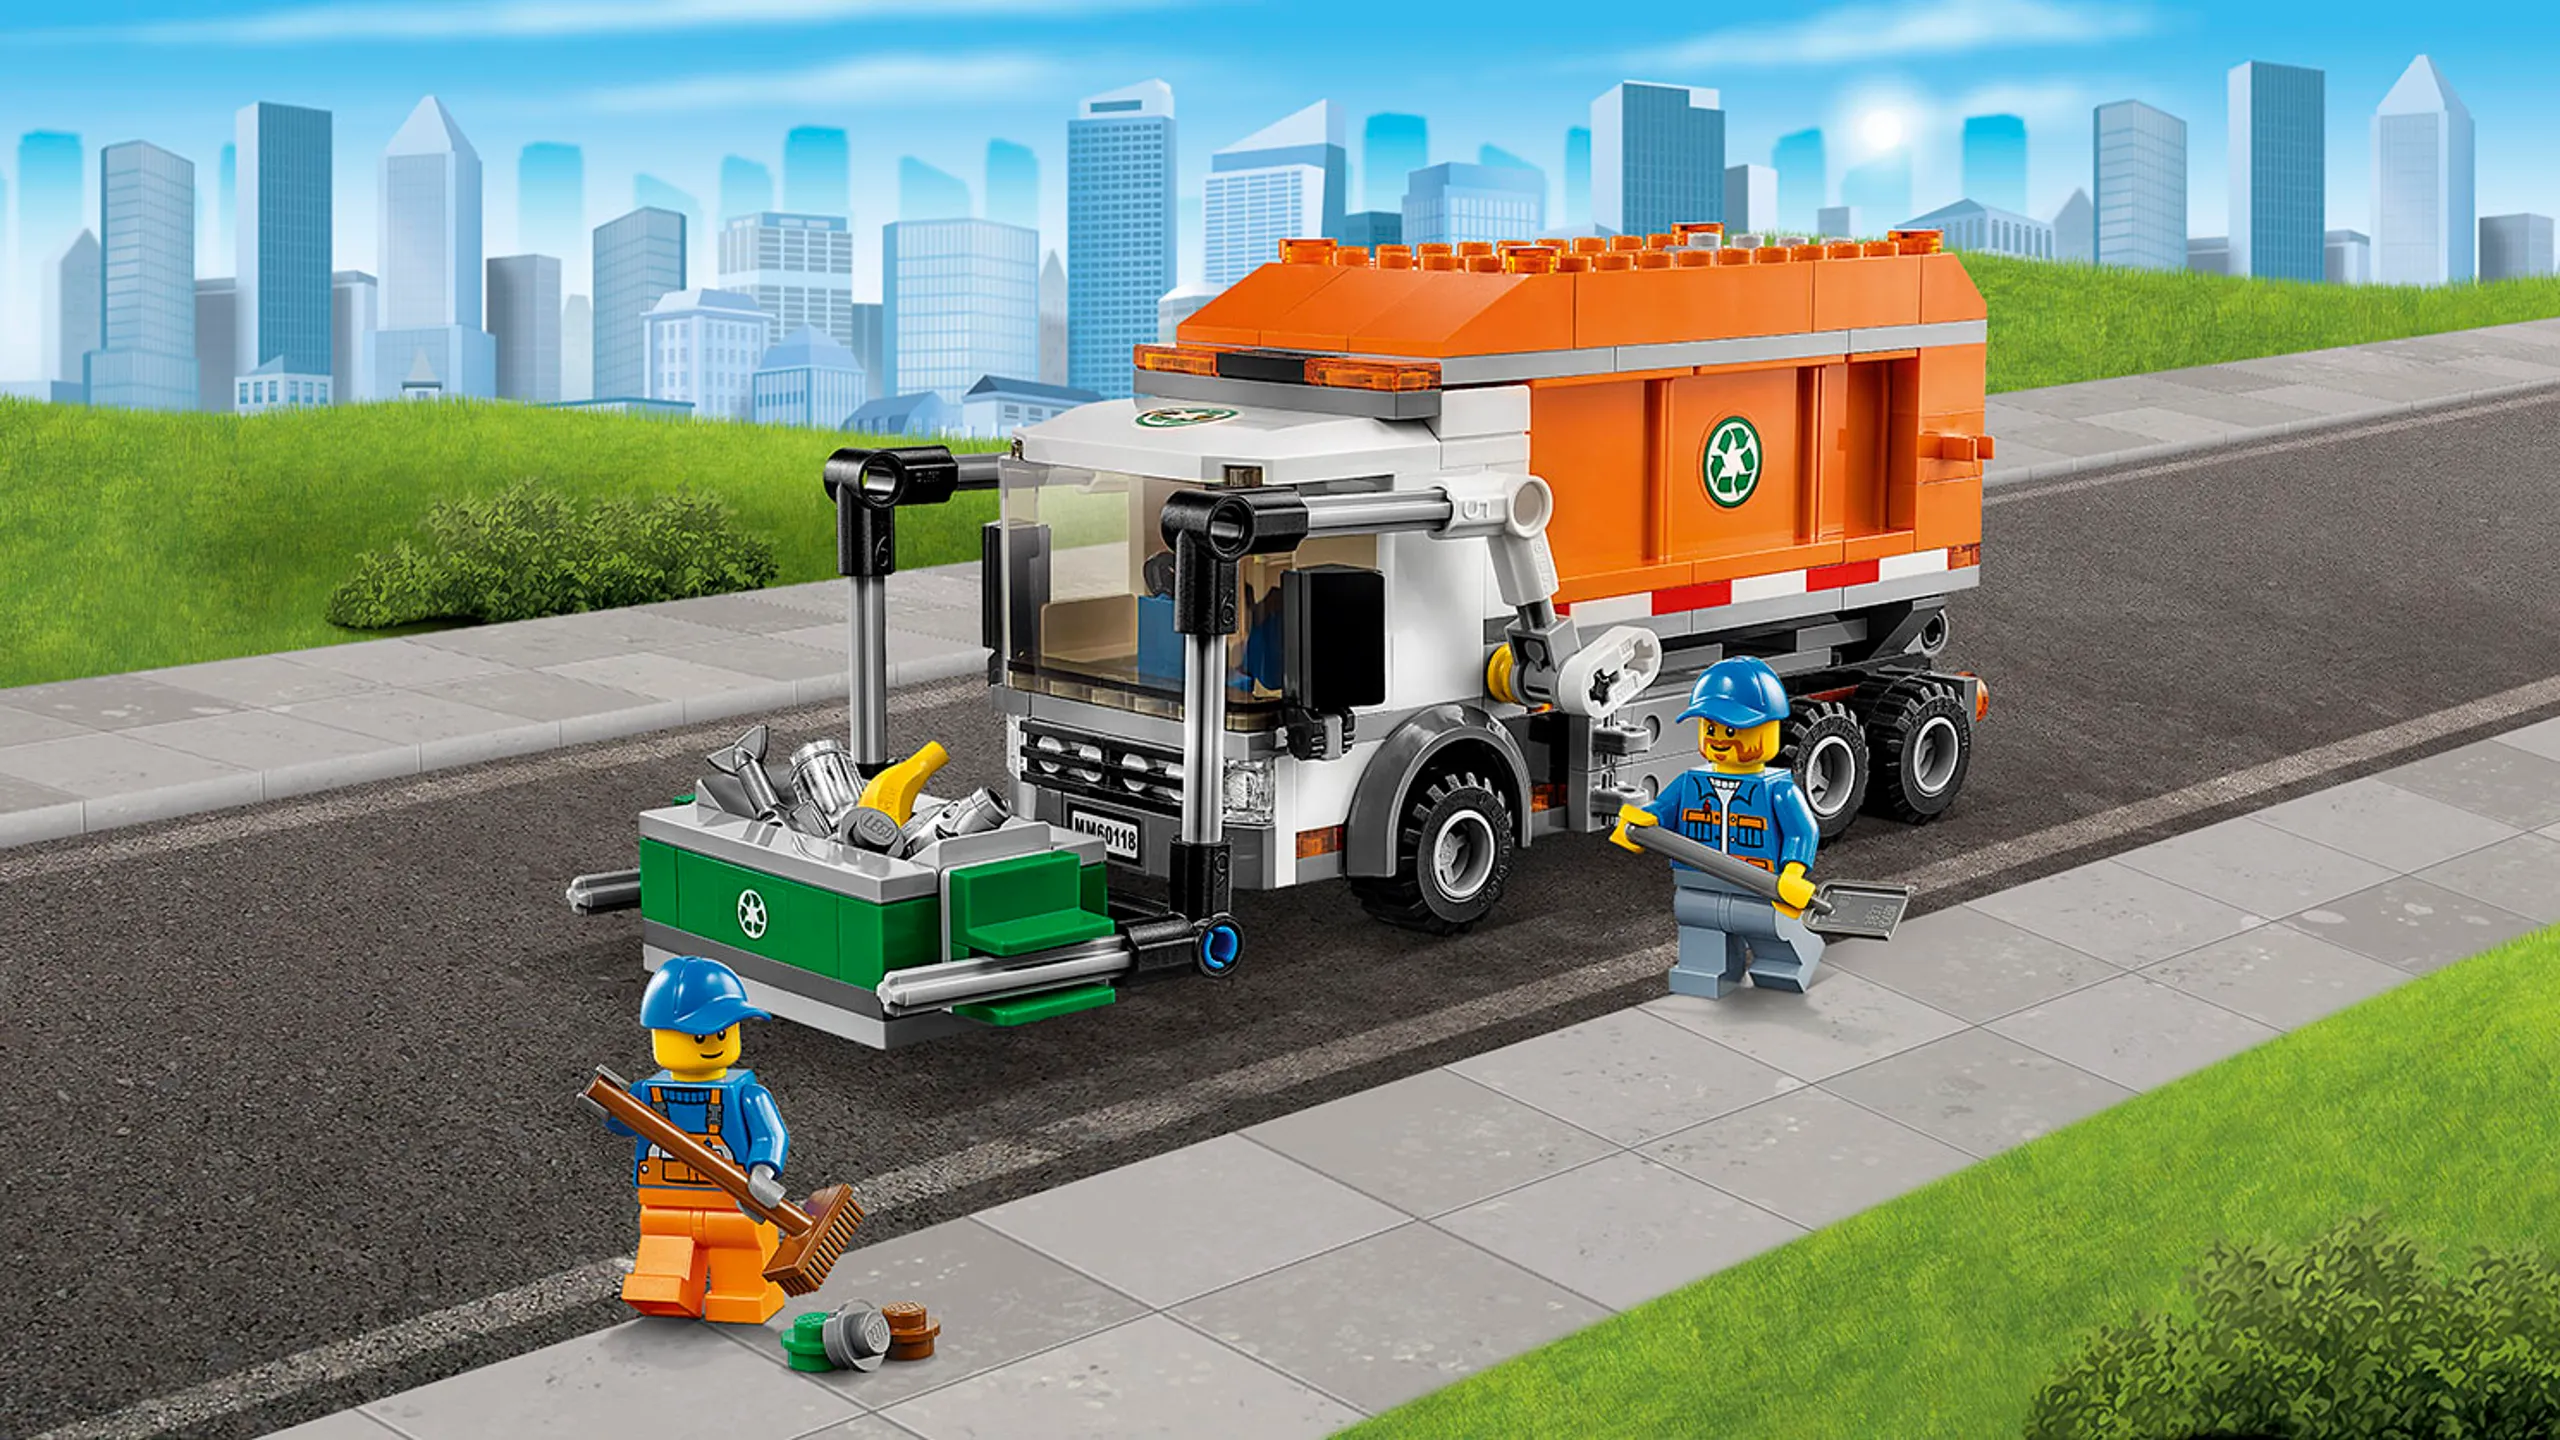 LEGO City Nagyszerű járművek szemetes autó, konténer és minifigurák – Szemetes autó 60118